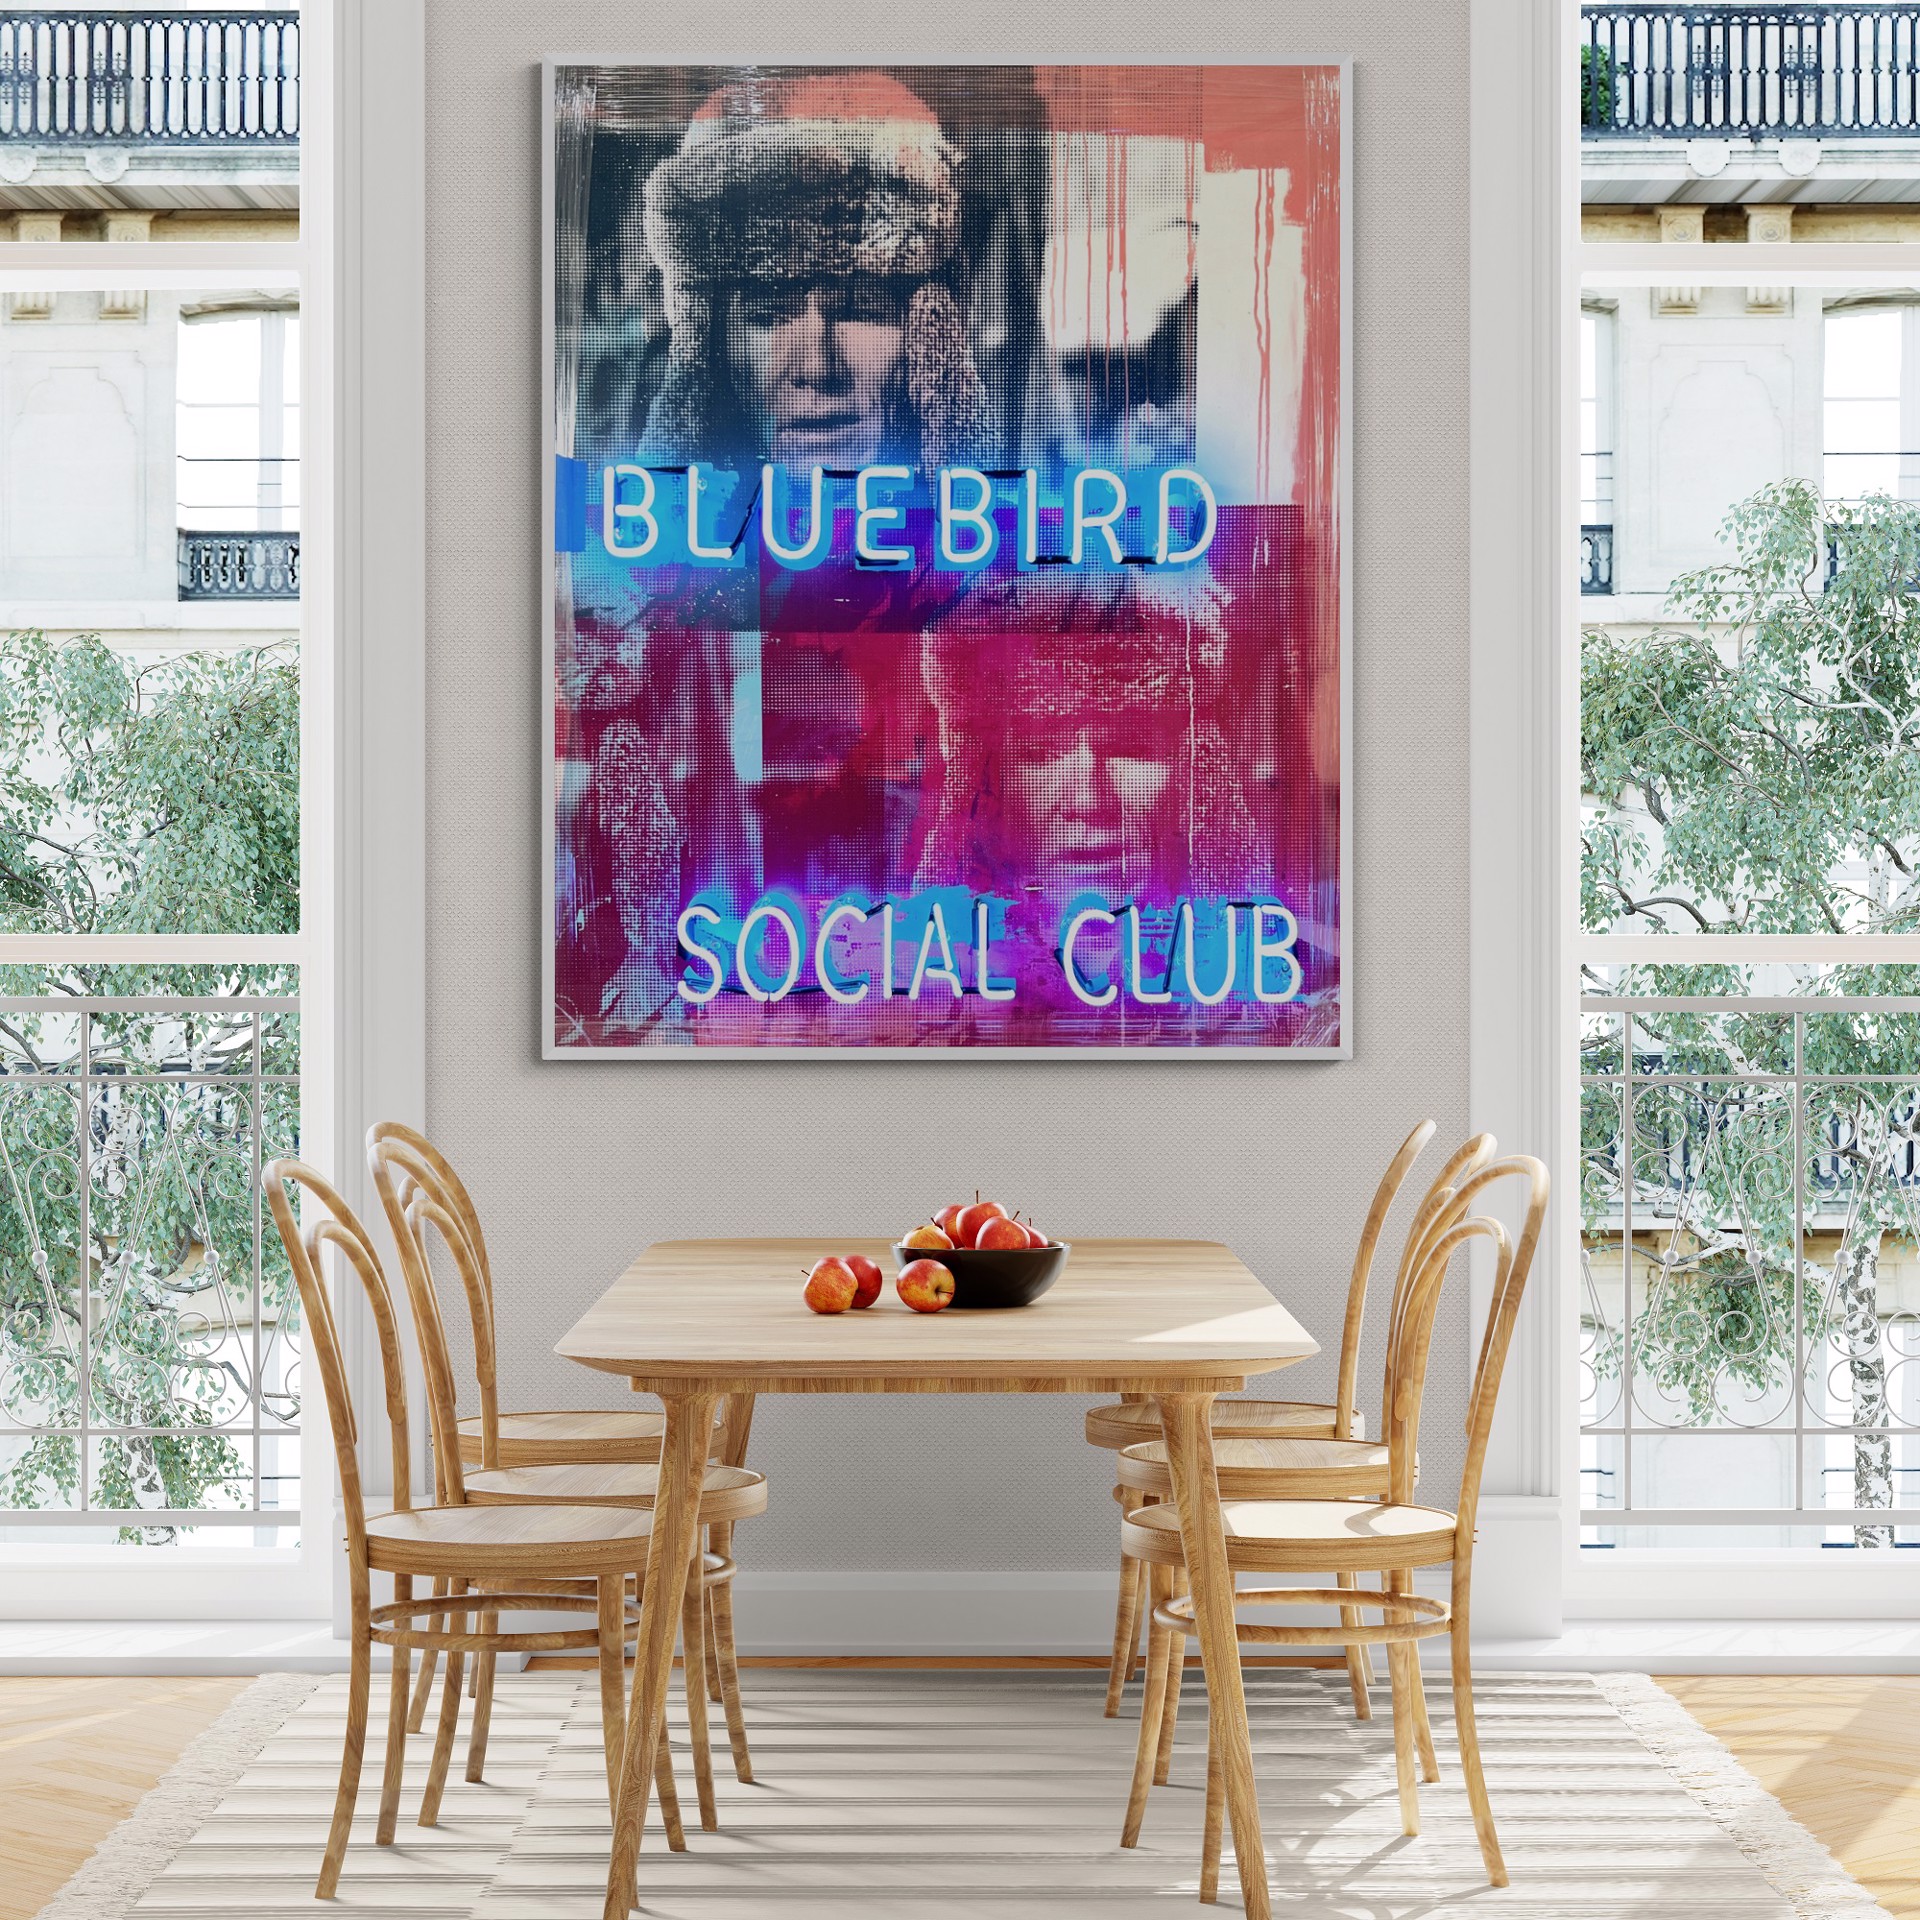 Blue Bird Social Club by Miles Glynn